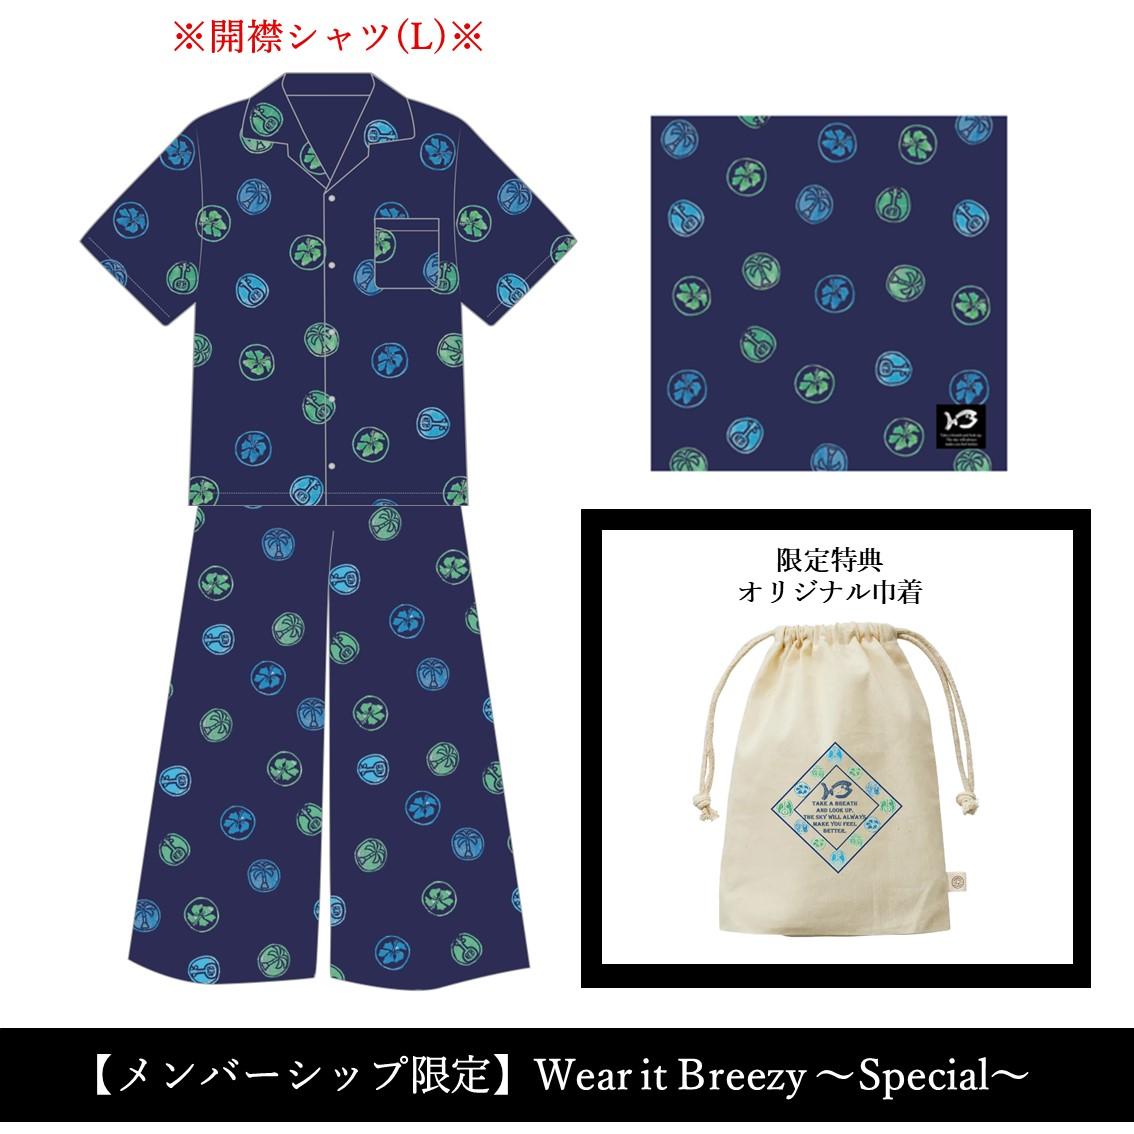 【メンバーシップ限定】Wear it Breezy ～Special～(シャツL)